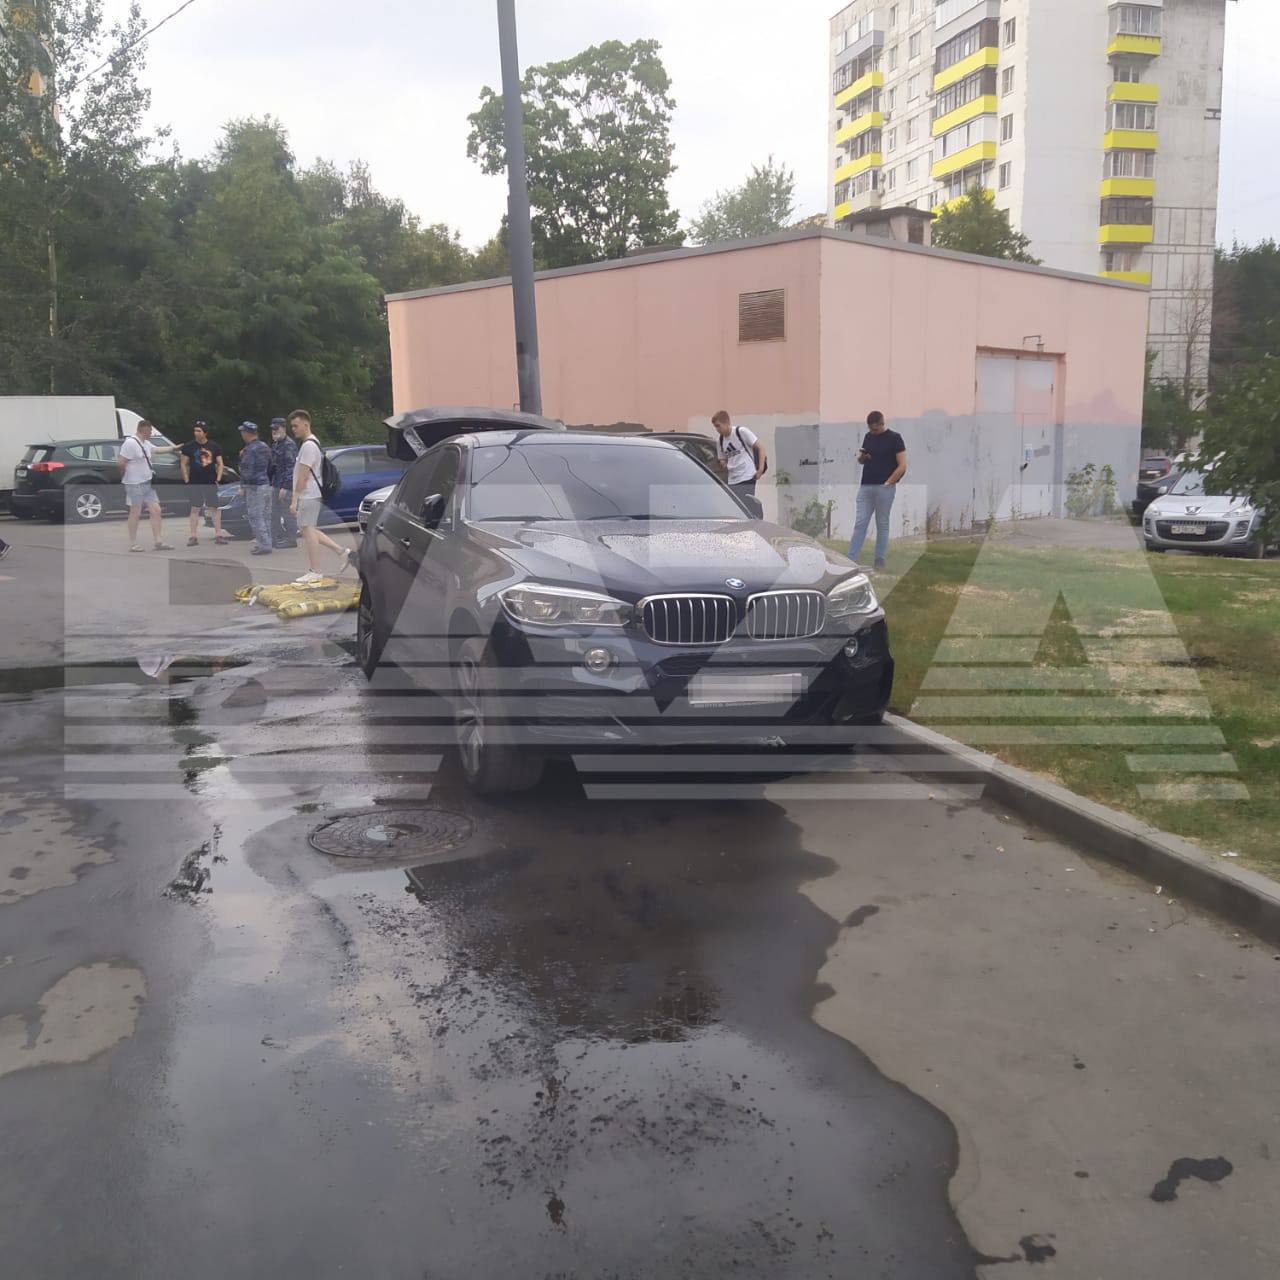 В Москве подожгли автомобиль замначальника управления Генштаба ВС РФ Евгения Секретарева, отвечающего за военную цензуру